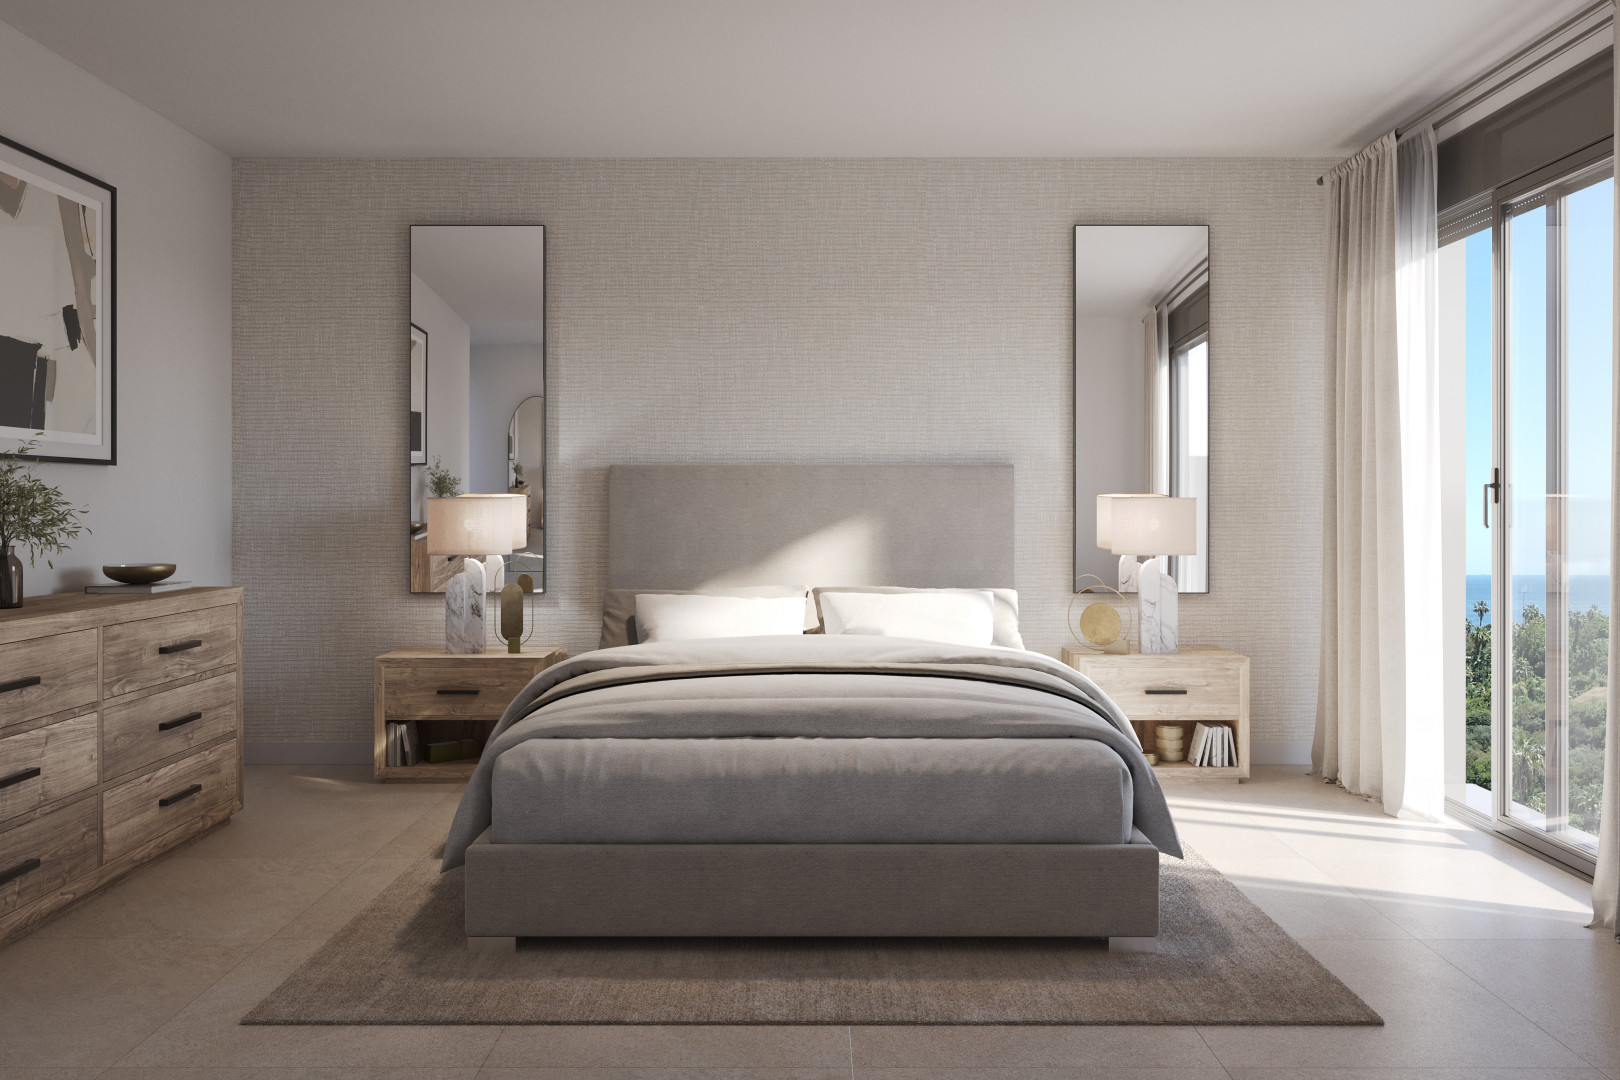 Exclusieve twee en drie slaapkamer appartementen met panoramisch middellandse zeezicht in Estepona. PL223